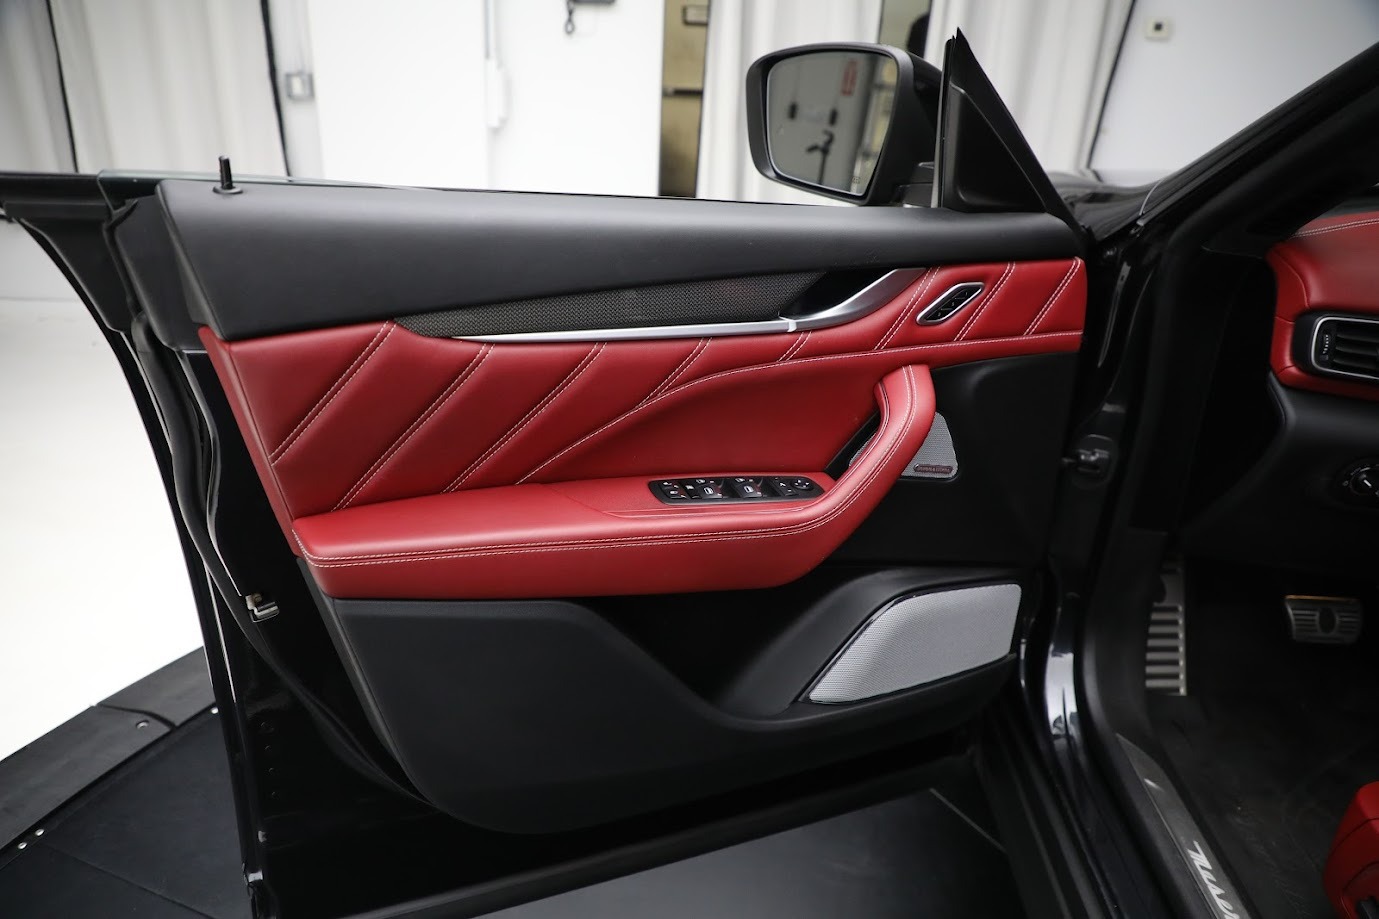 New-2020-Maserati-Levante-GTS